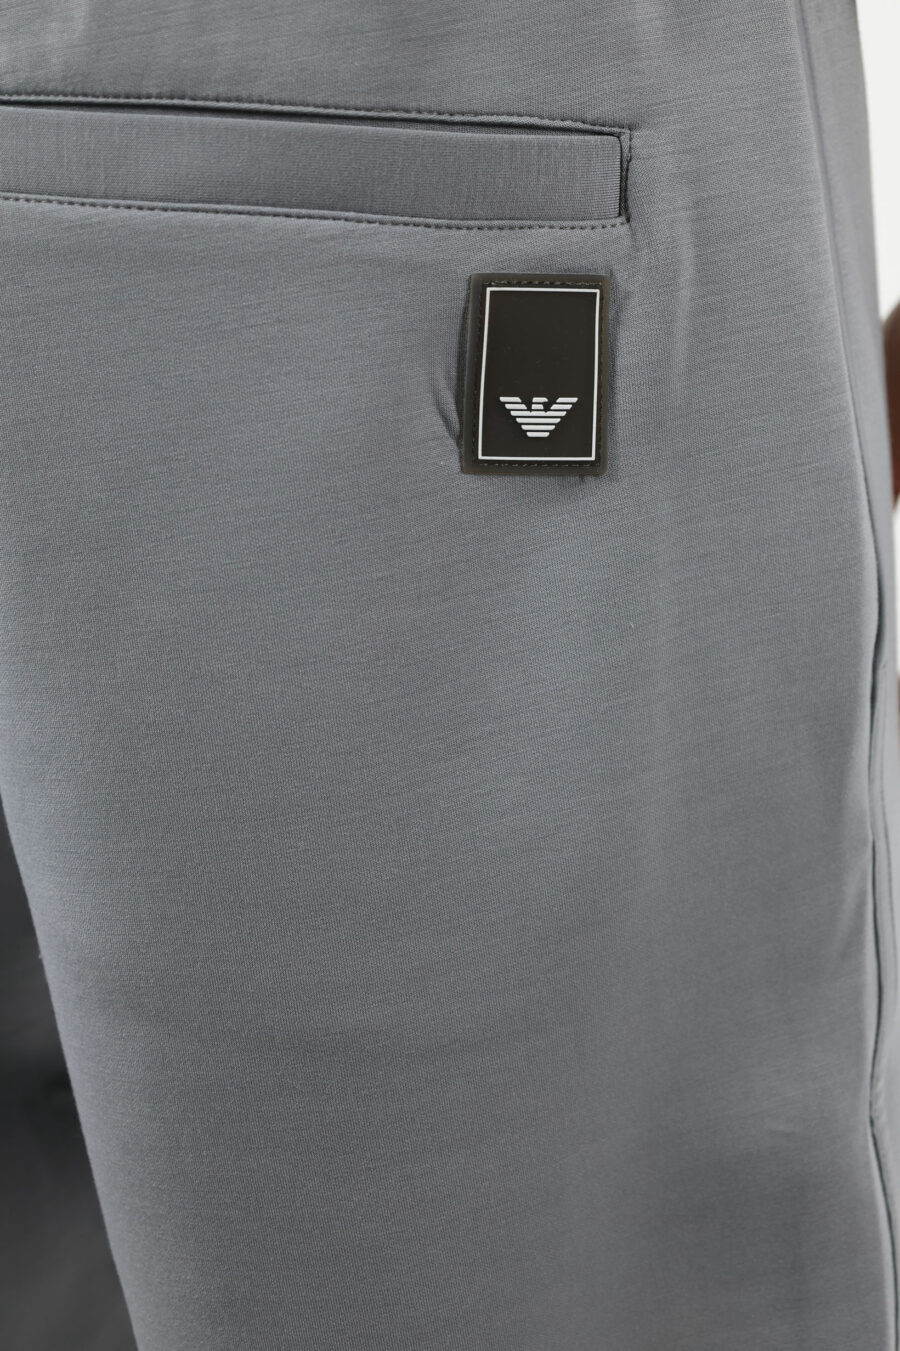 Pantalón de chándal gris con minilogo águila - 110930